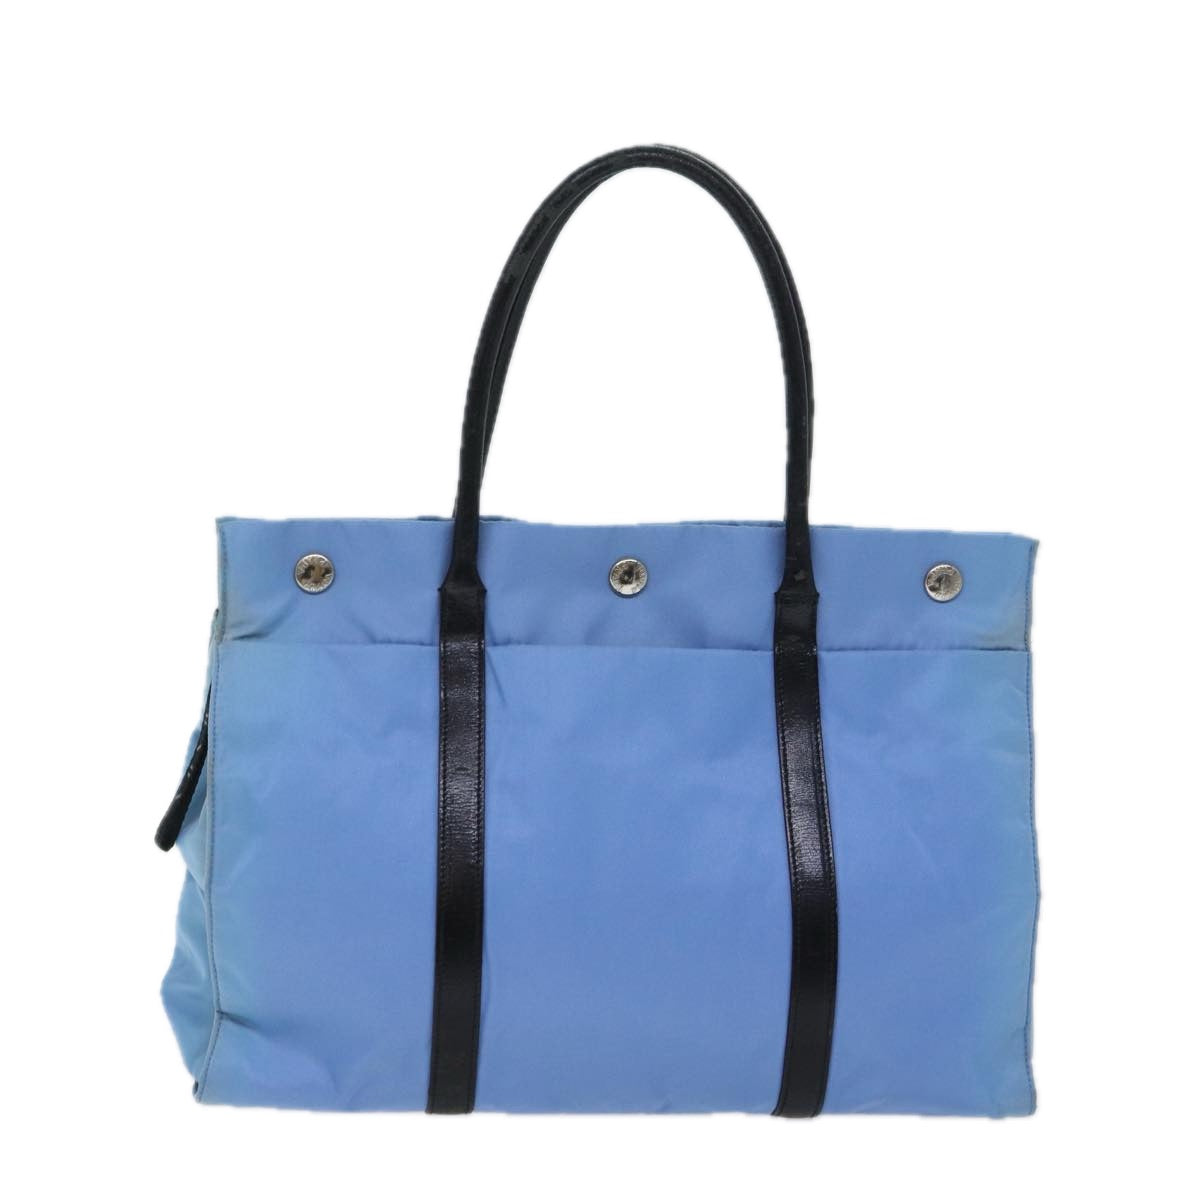 PRADA Hand Bag Nylon Light Blue Black Auth 72011 - 0